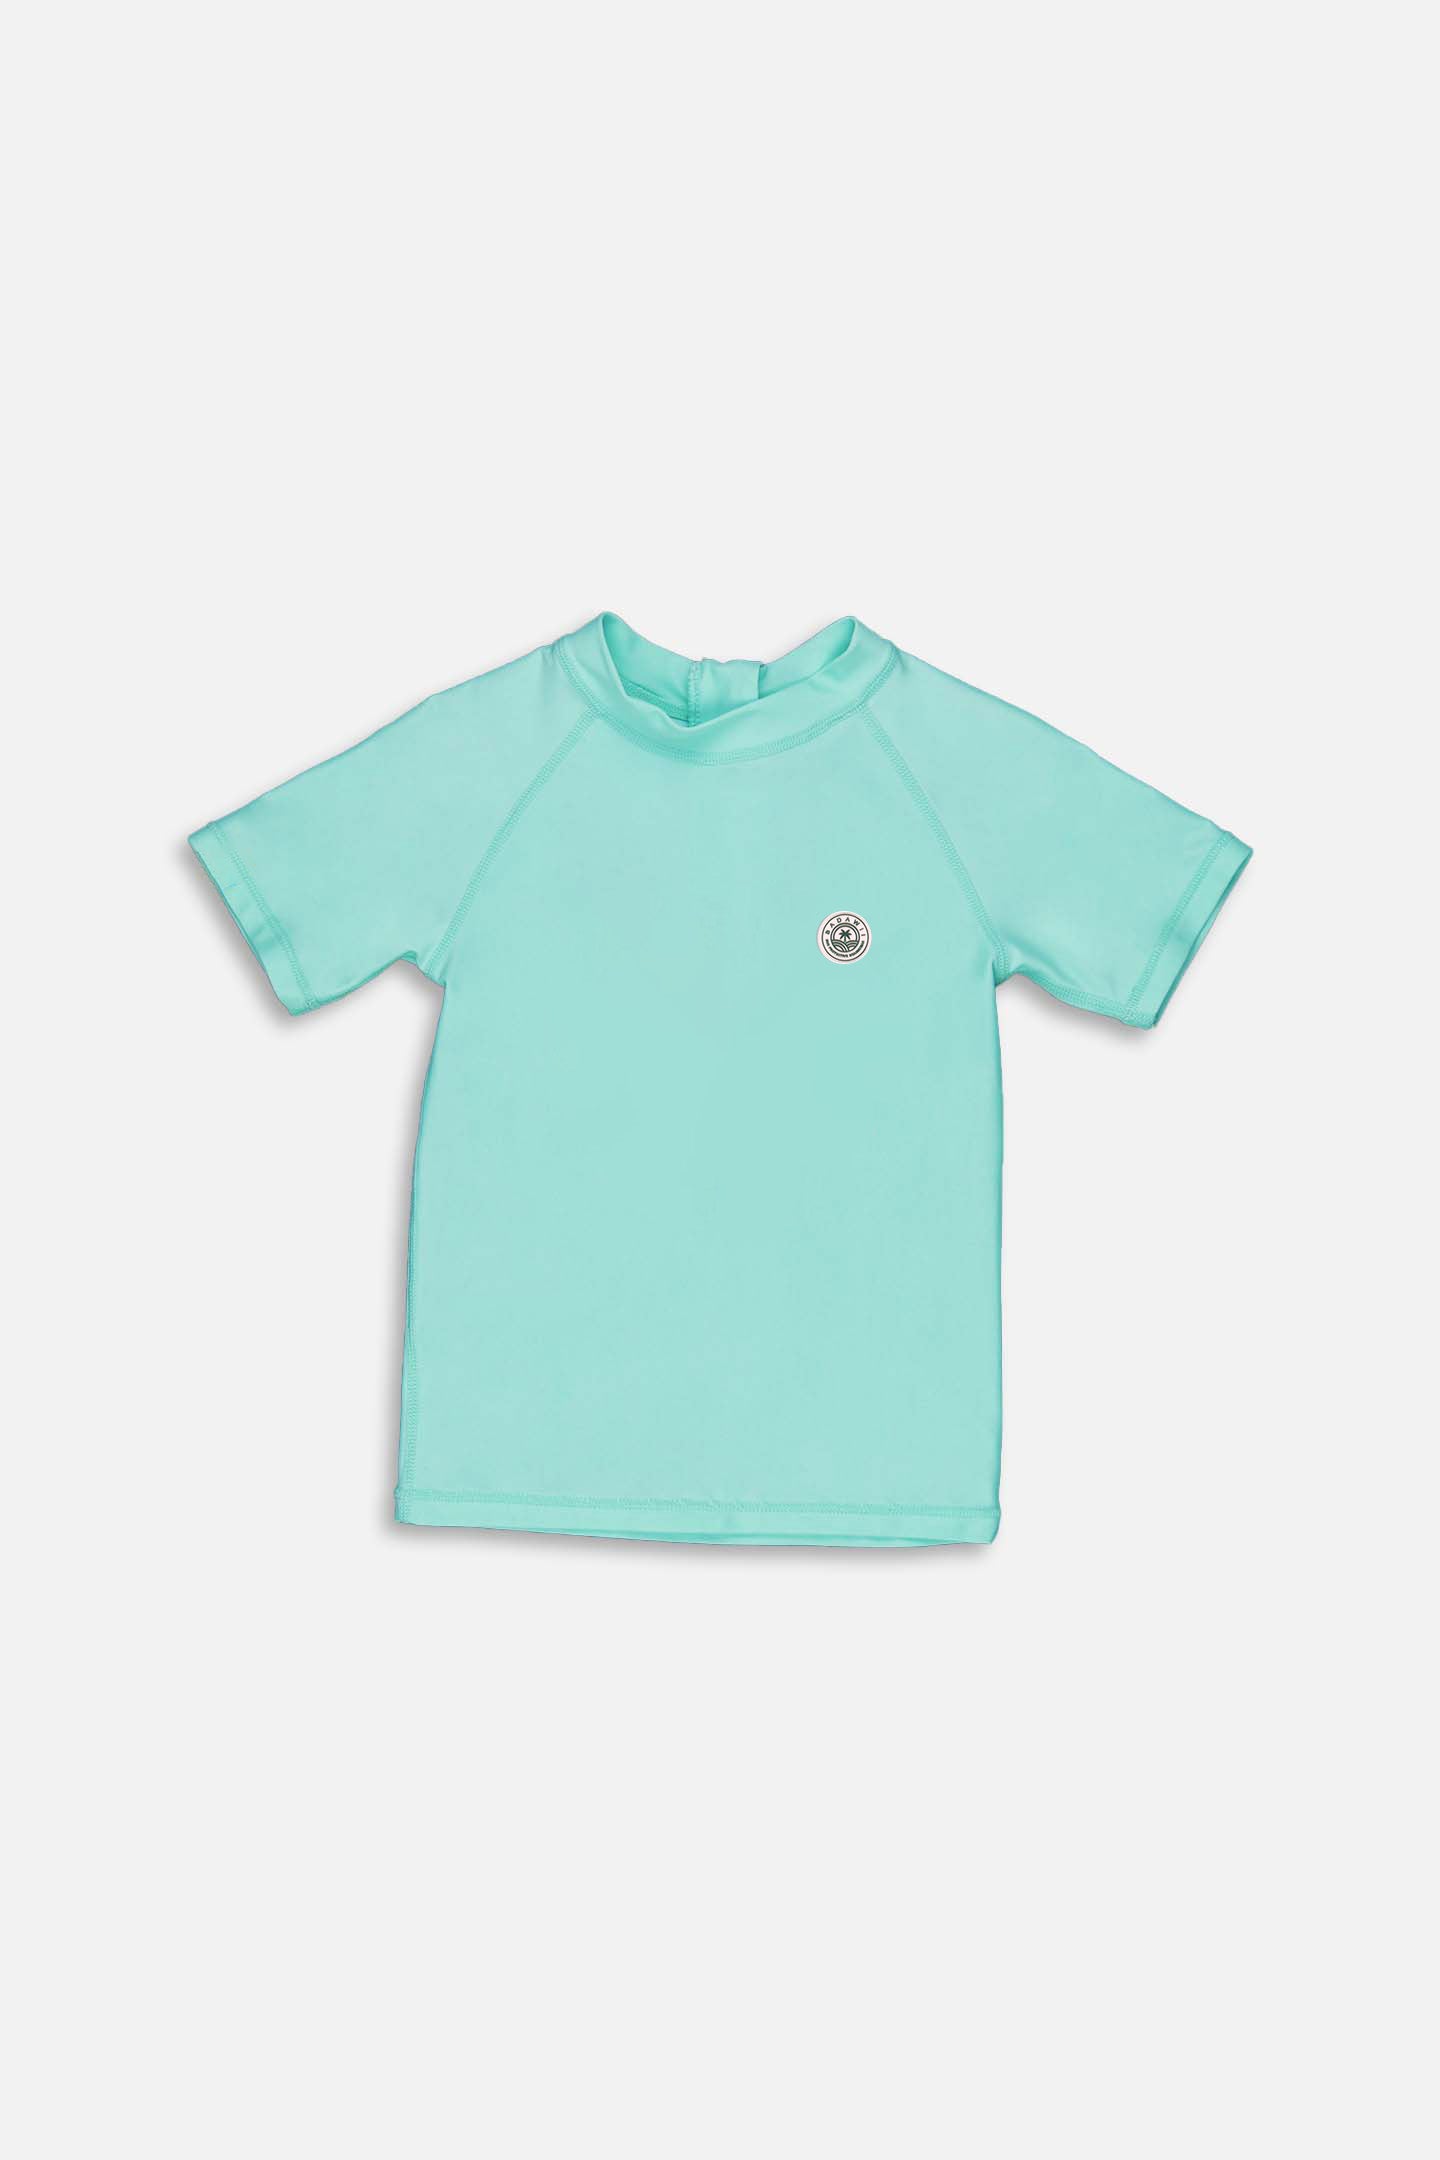 Short-sleeved rashie - Turquoise classic